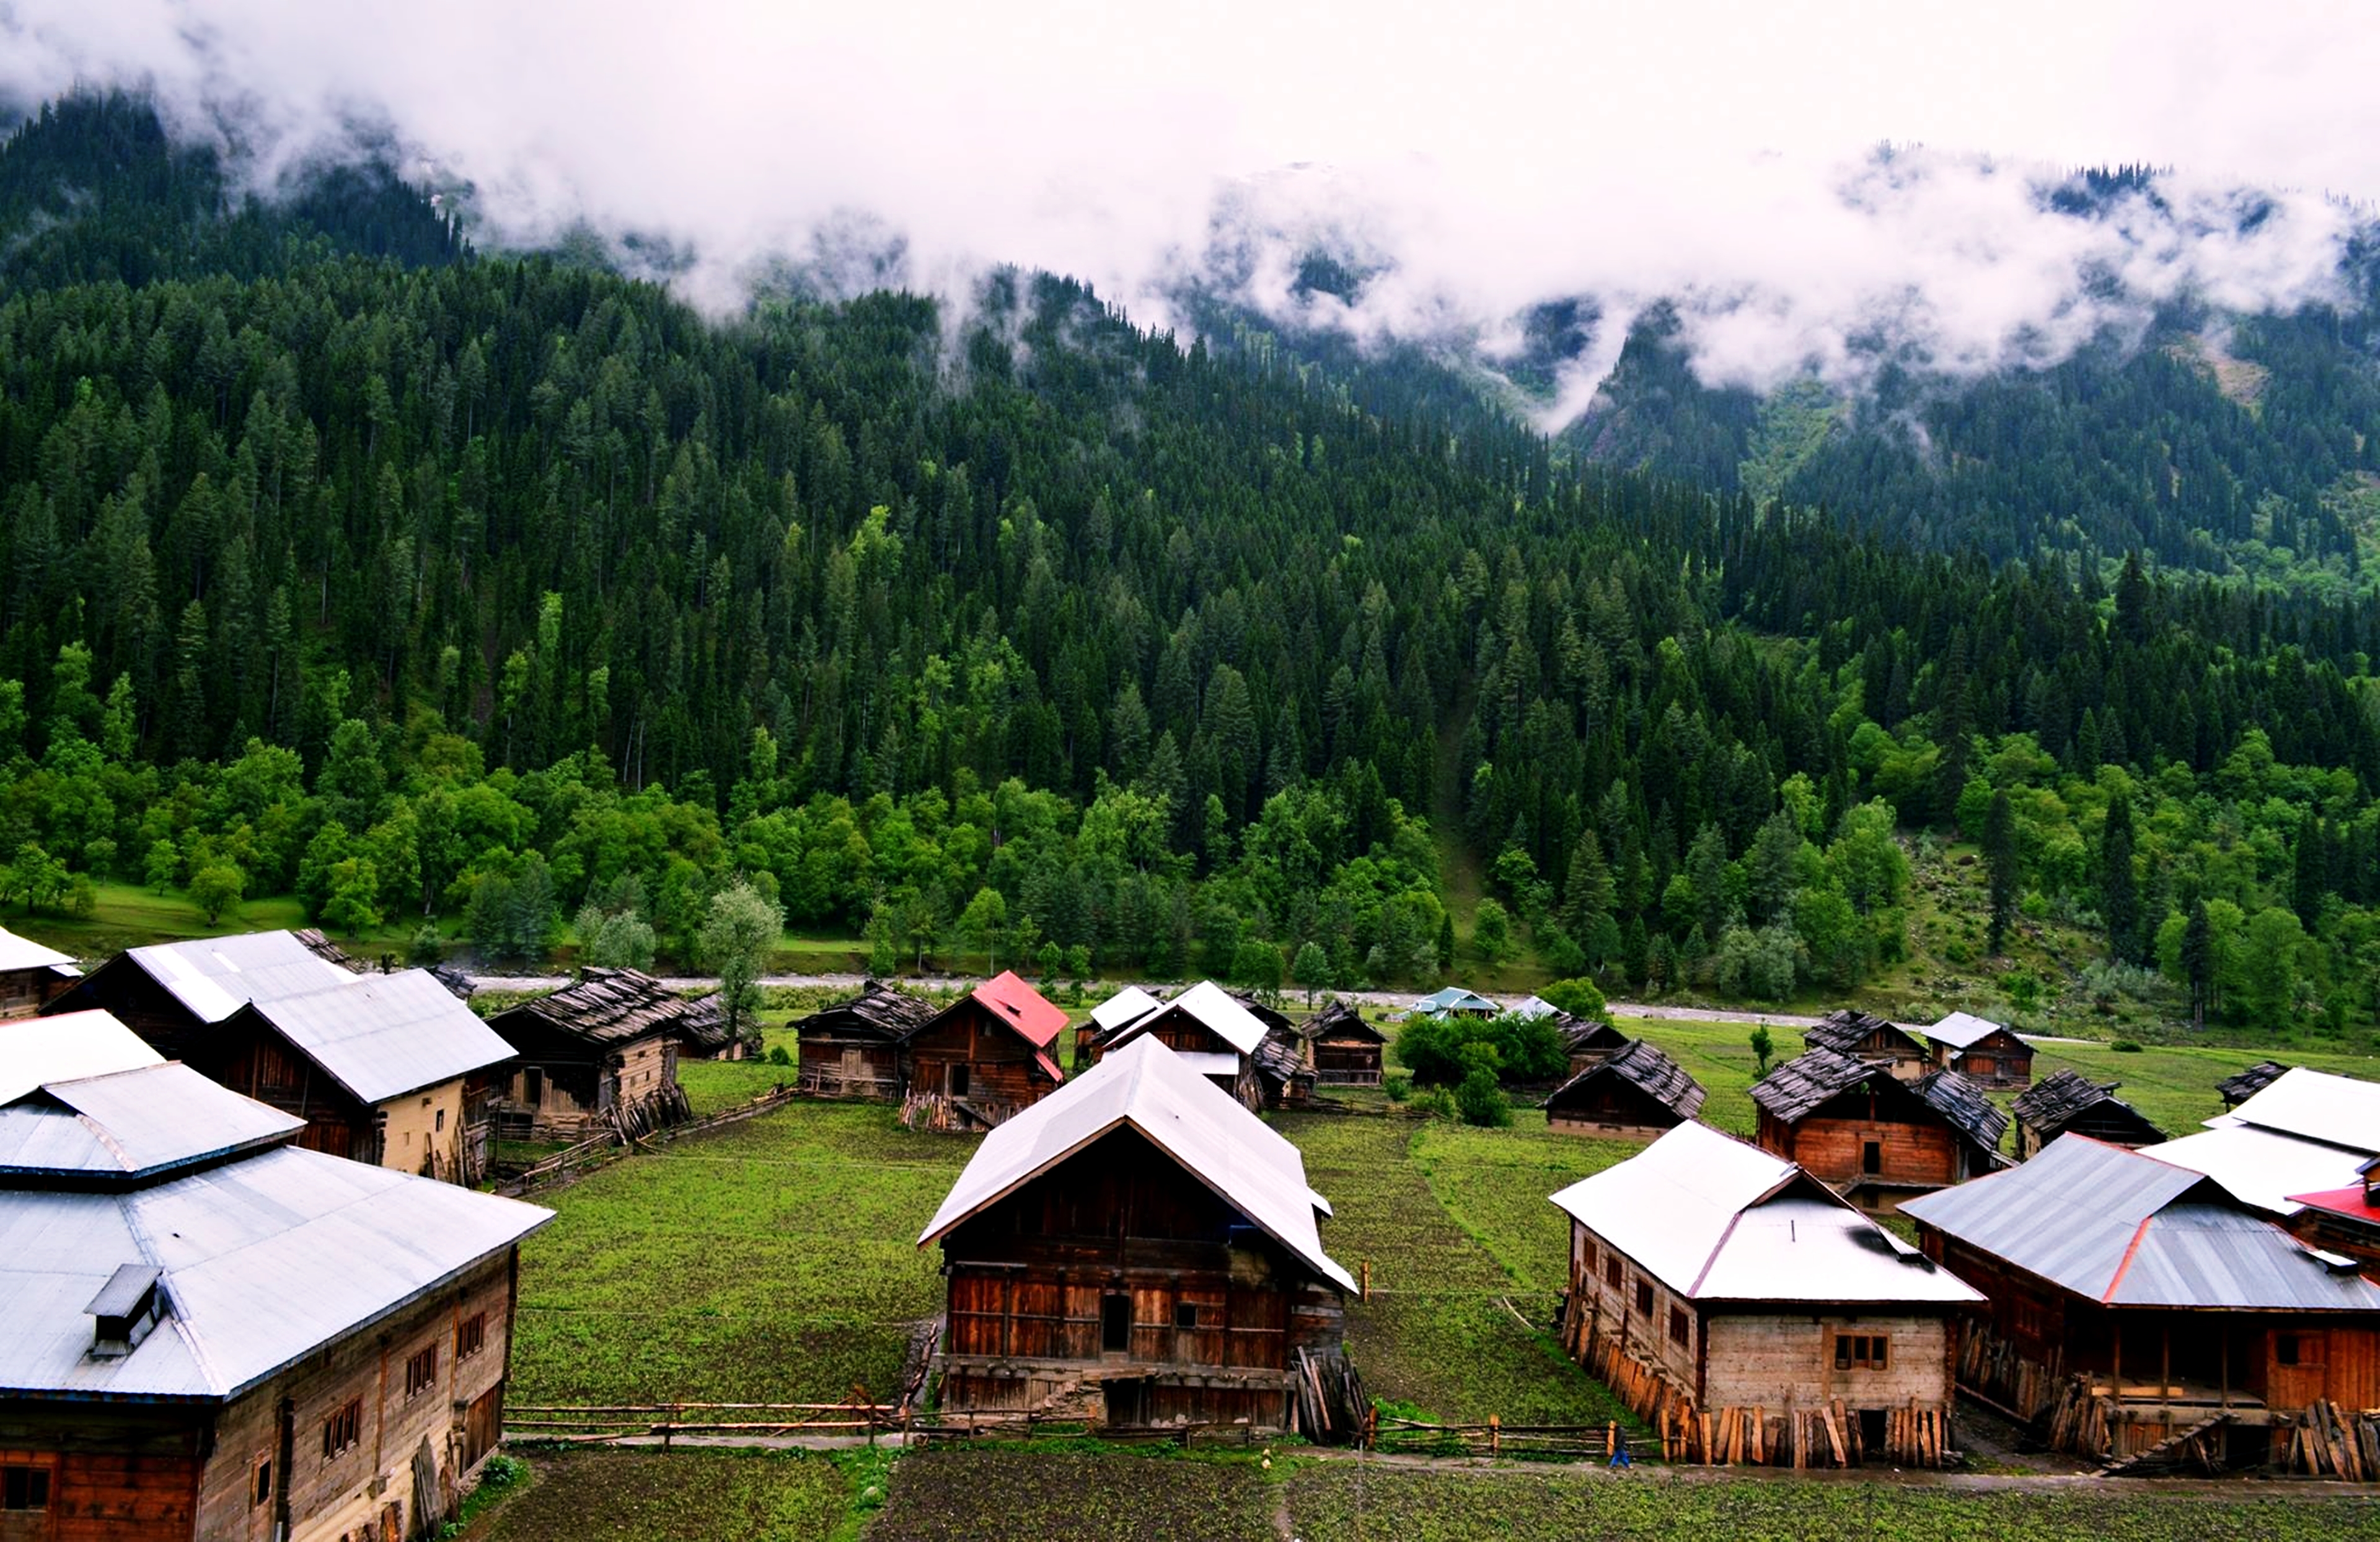 Landscape Village Hut House Forest Mountain Kashmir Pakistan 3840x2488